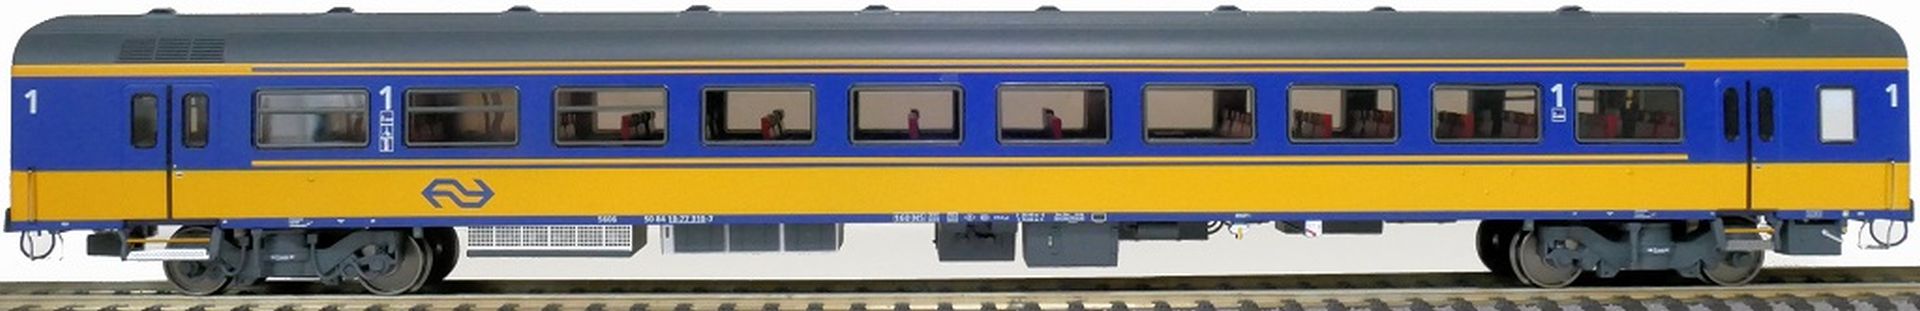 Exact-Train EX11174 - Personenwagen ICRm, A, NS, Ep.V, mit Innenbel. und Figuren